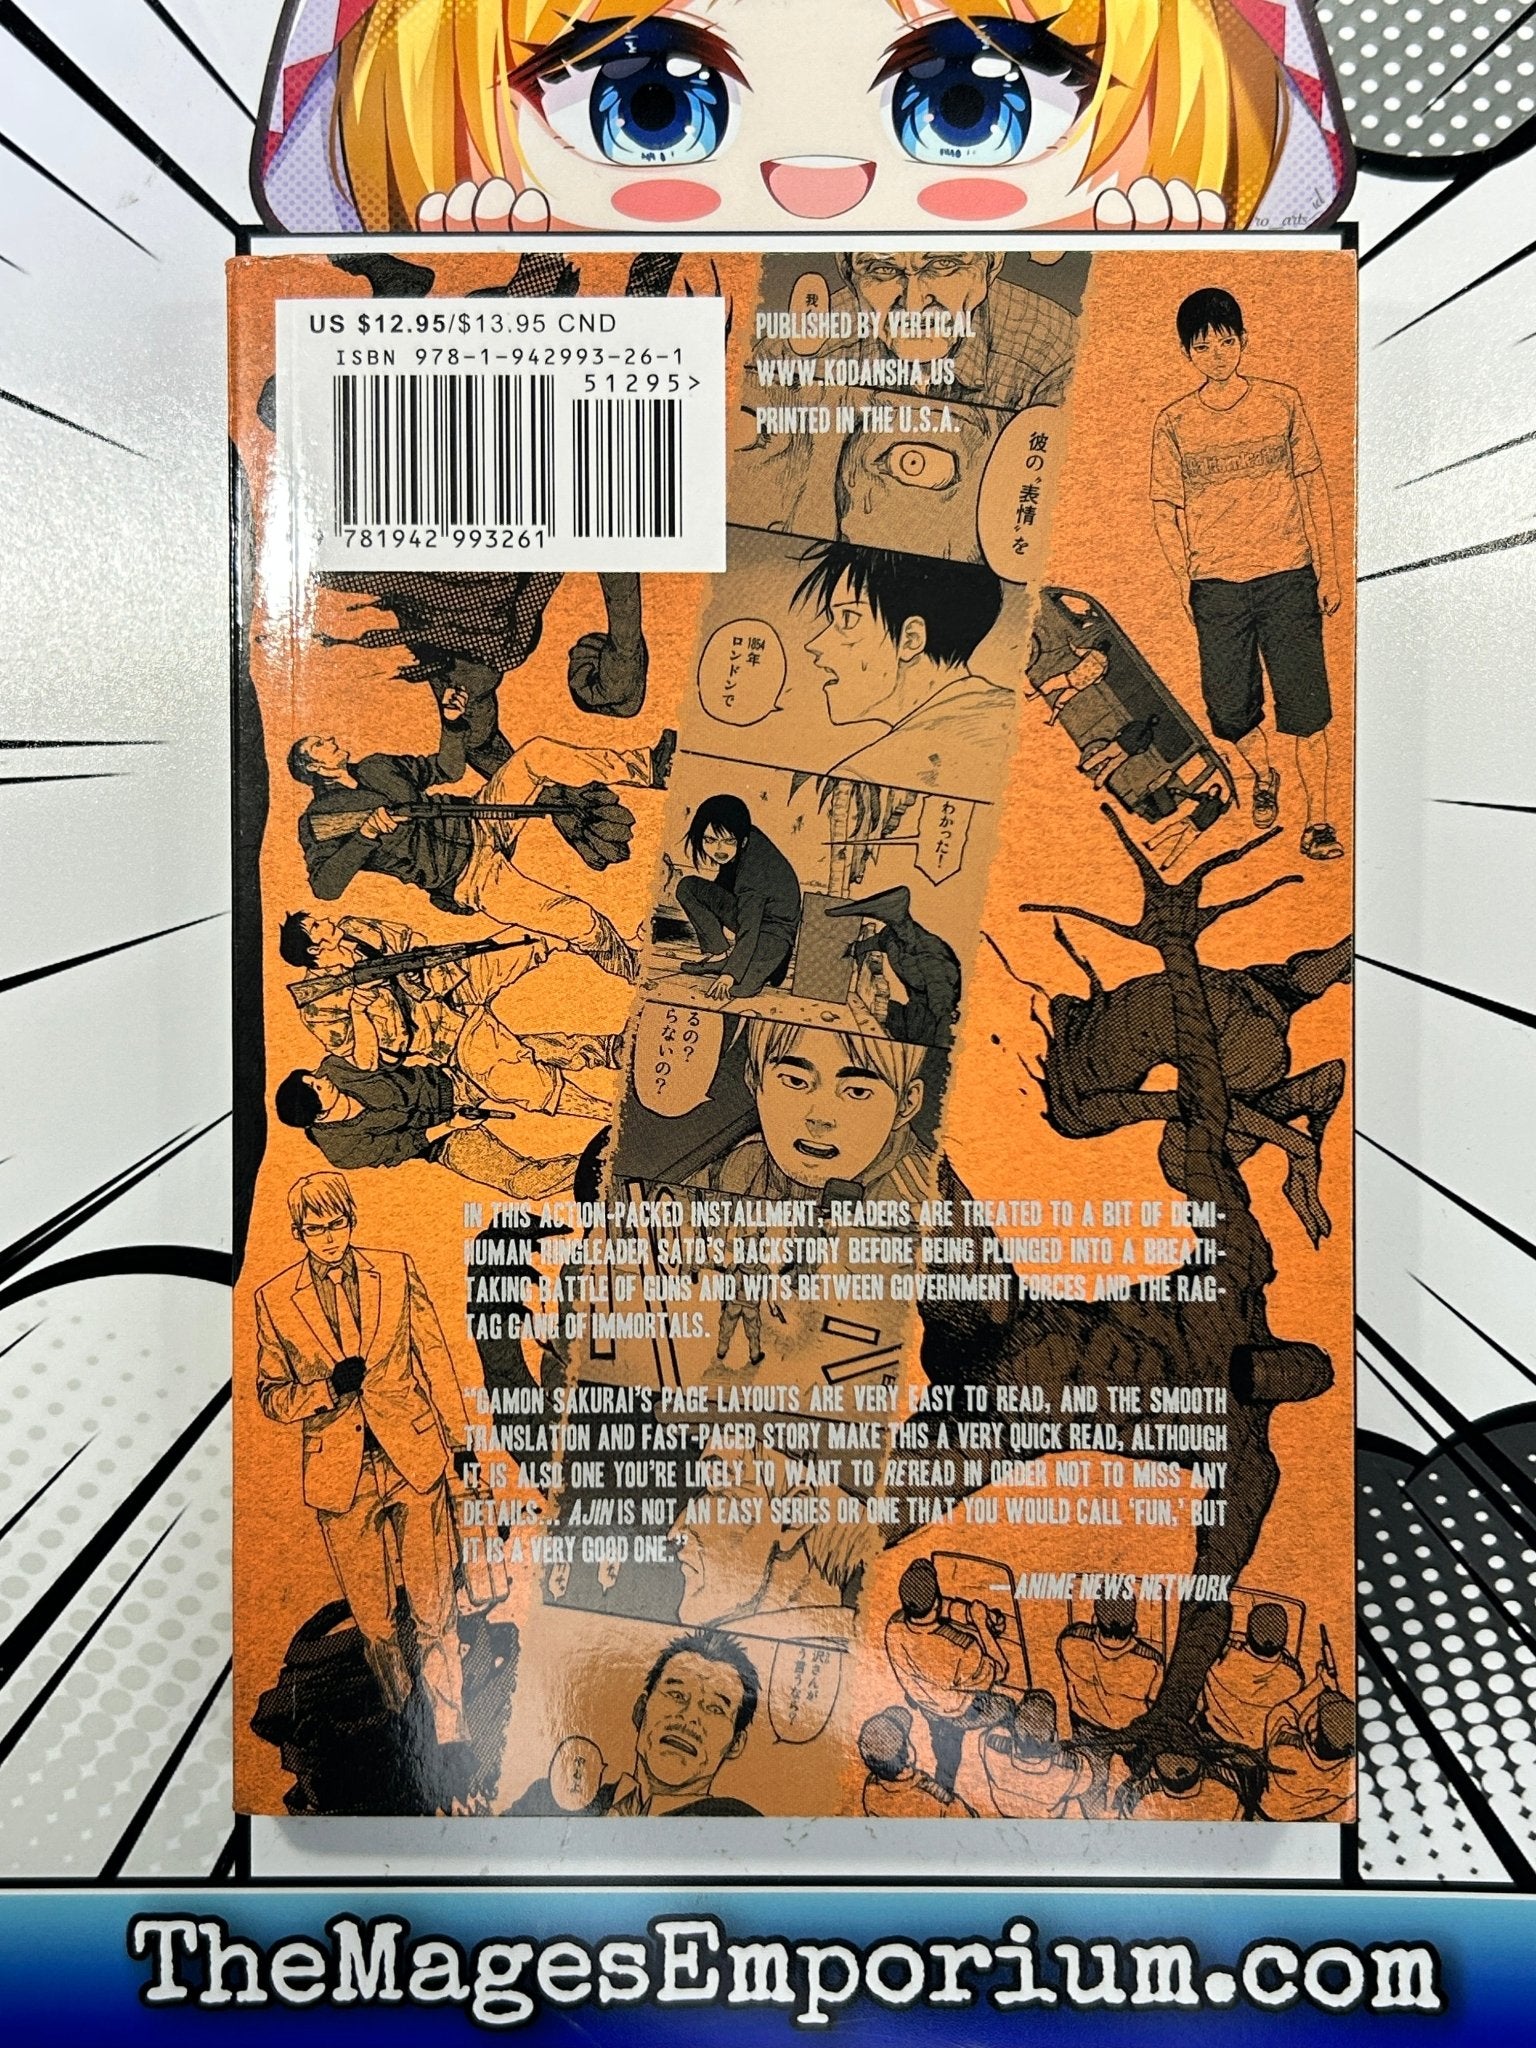 Manga Review: Ajin: Demi-Human vol. 4